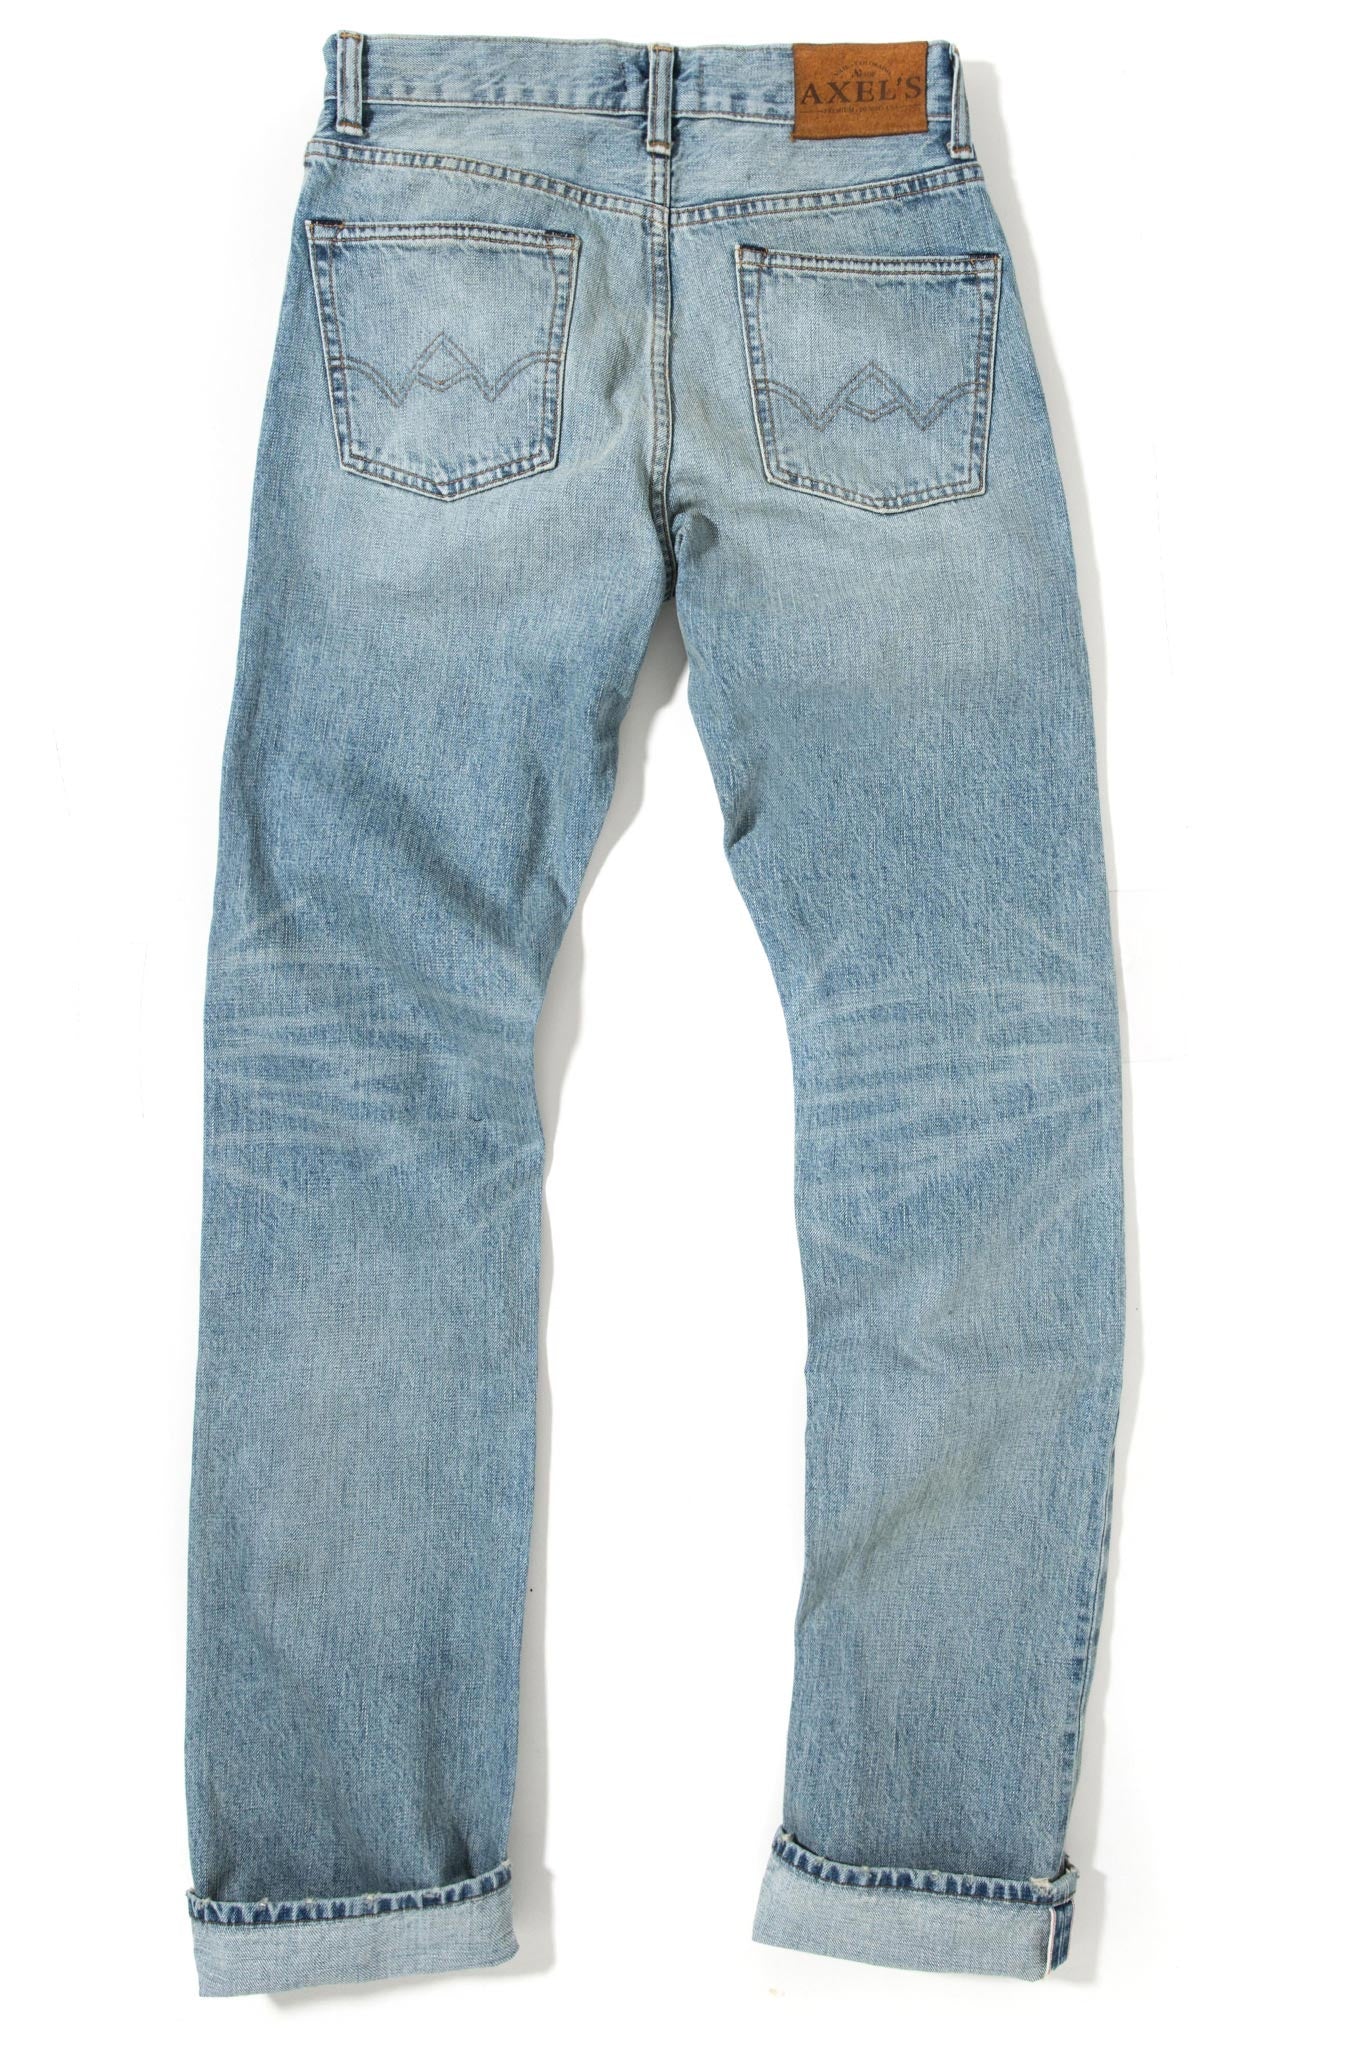 Santa Cruz Selvedge Denim | Mens - Pants - 5 Pocket | Axels Premium Denim